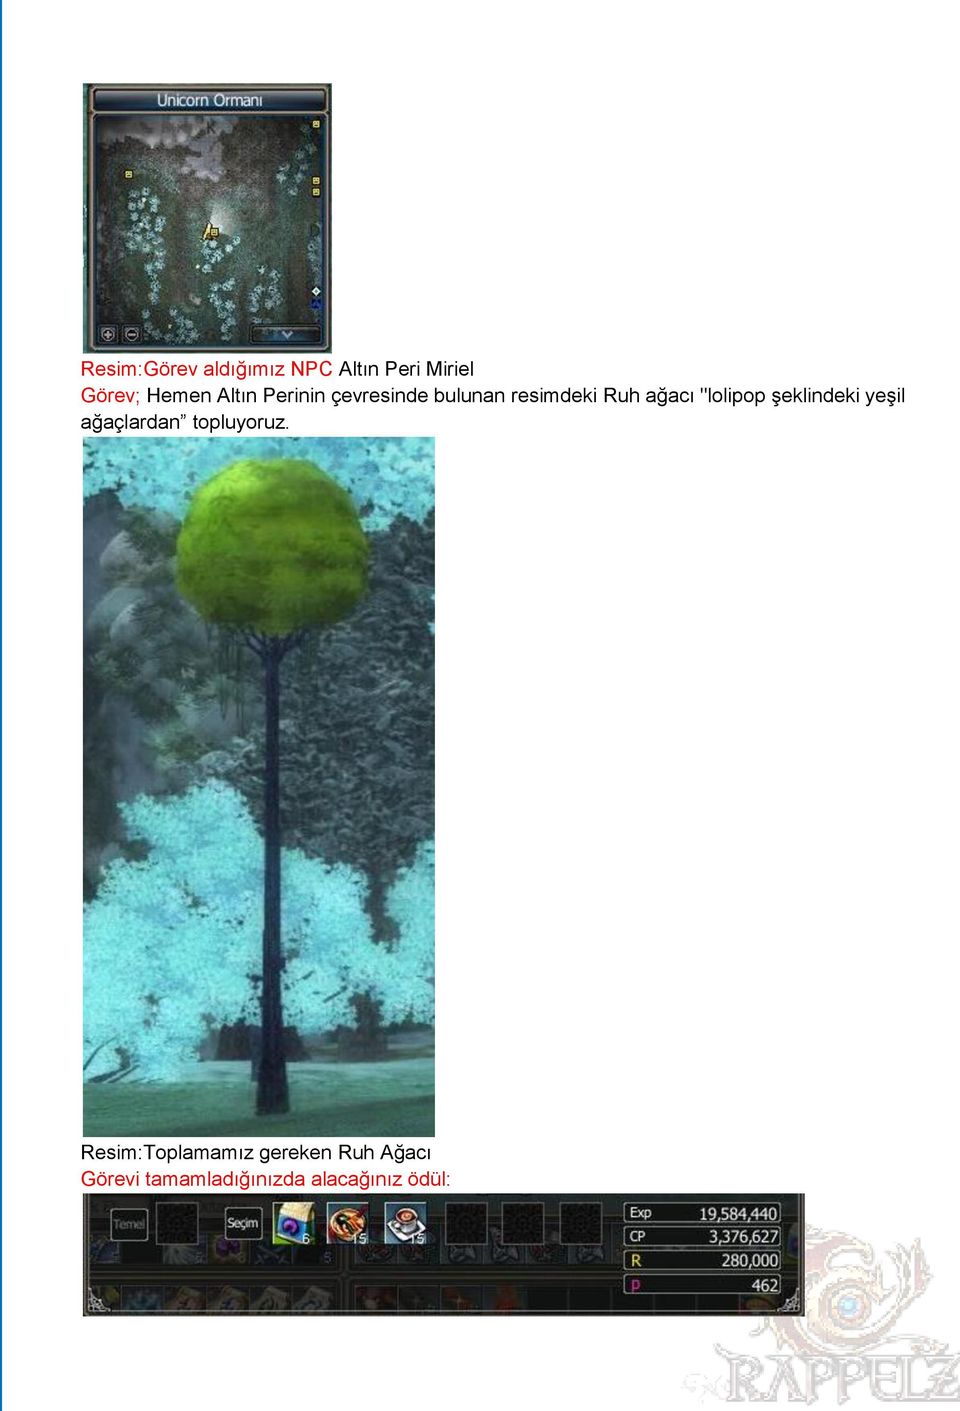 resimdeki Ruh ağacı "lolipop şeklindeki yeşil